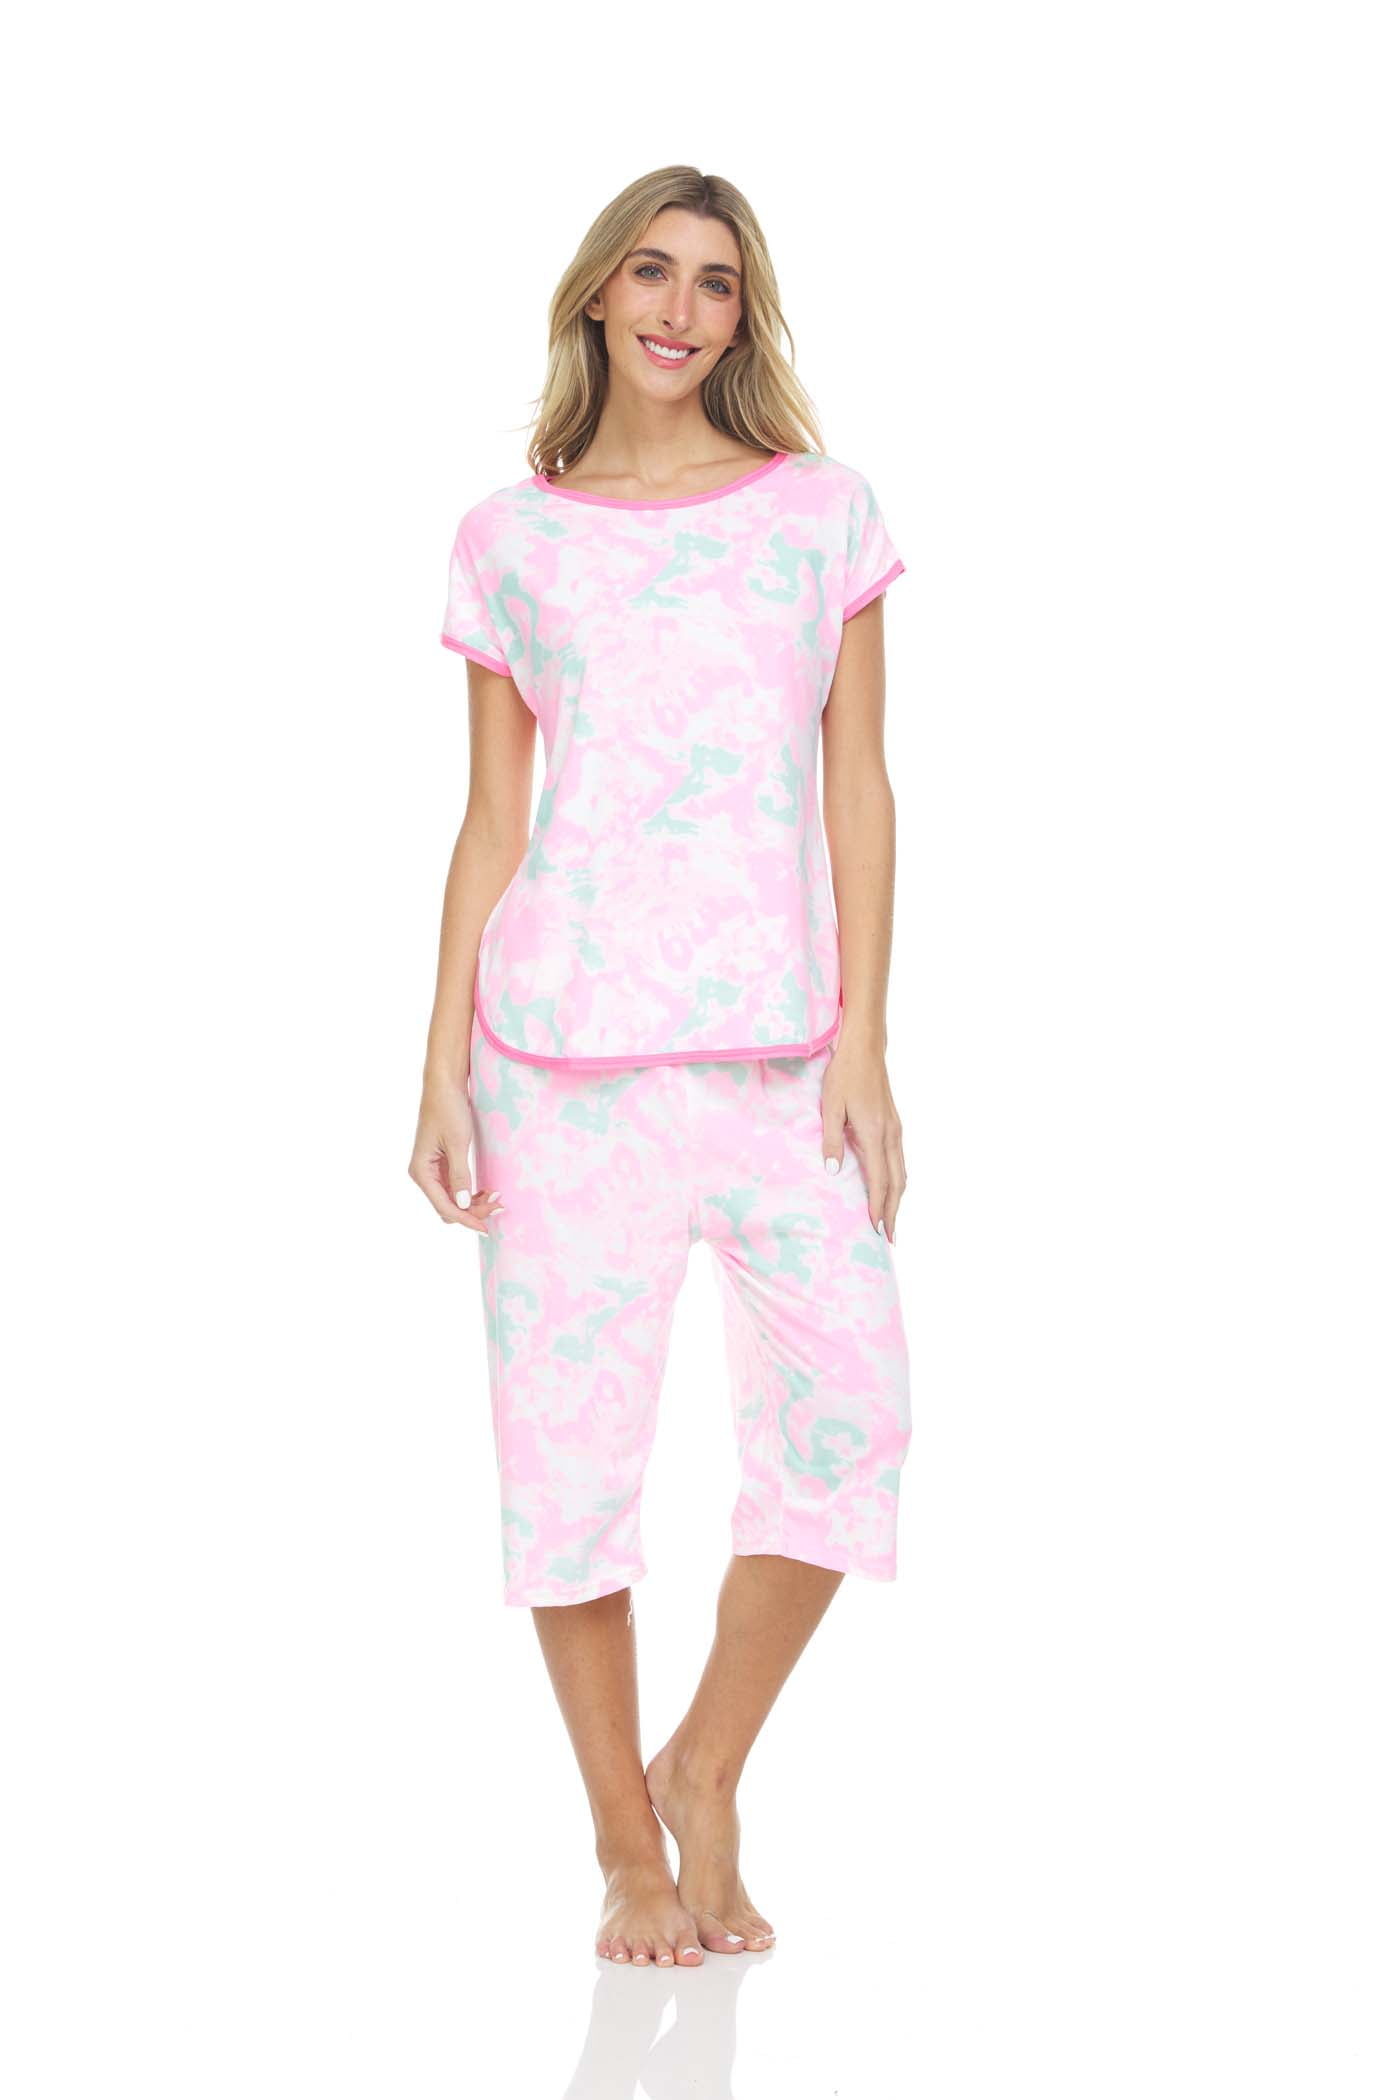 CafePress Yorkie Lover Women's Dark Pajamas Women's Pajamas 543639237